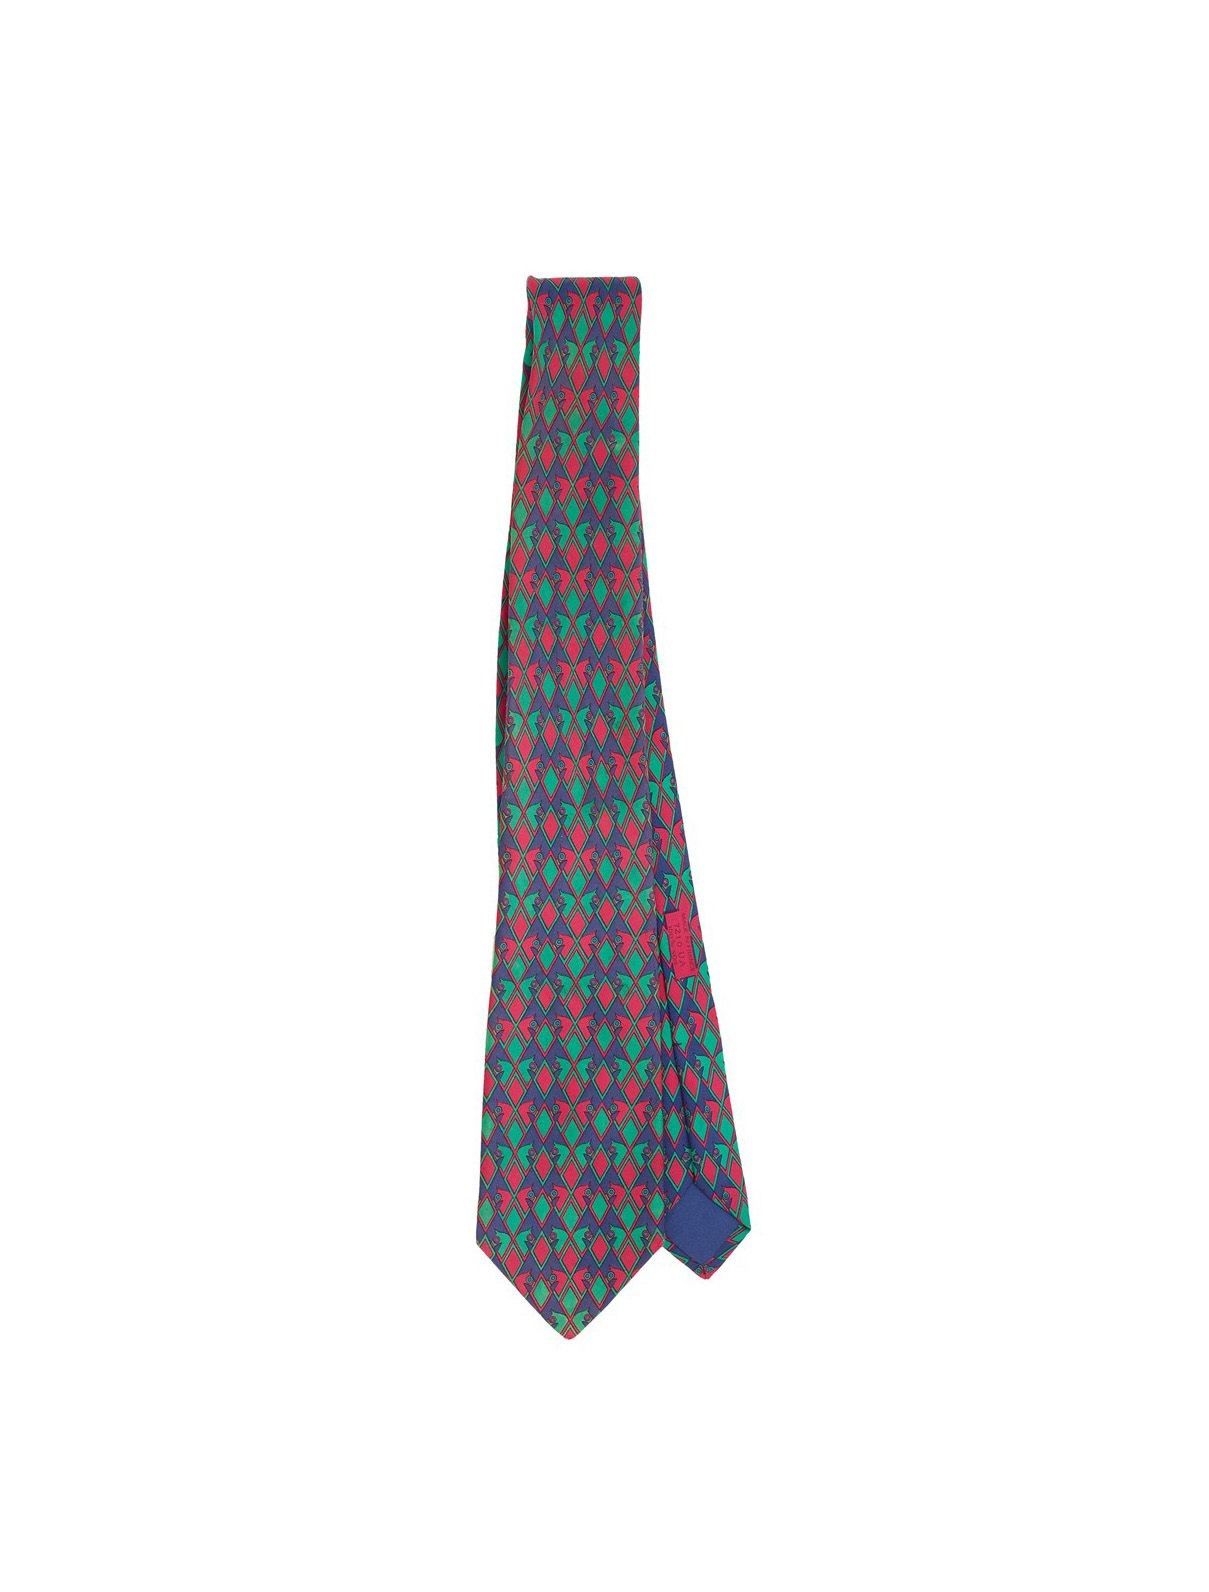 HERMES 爱马仕丝绸领带。状况良好。

爱马仕丝绸领带。条件良好。